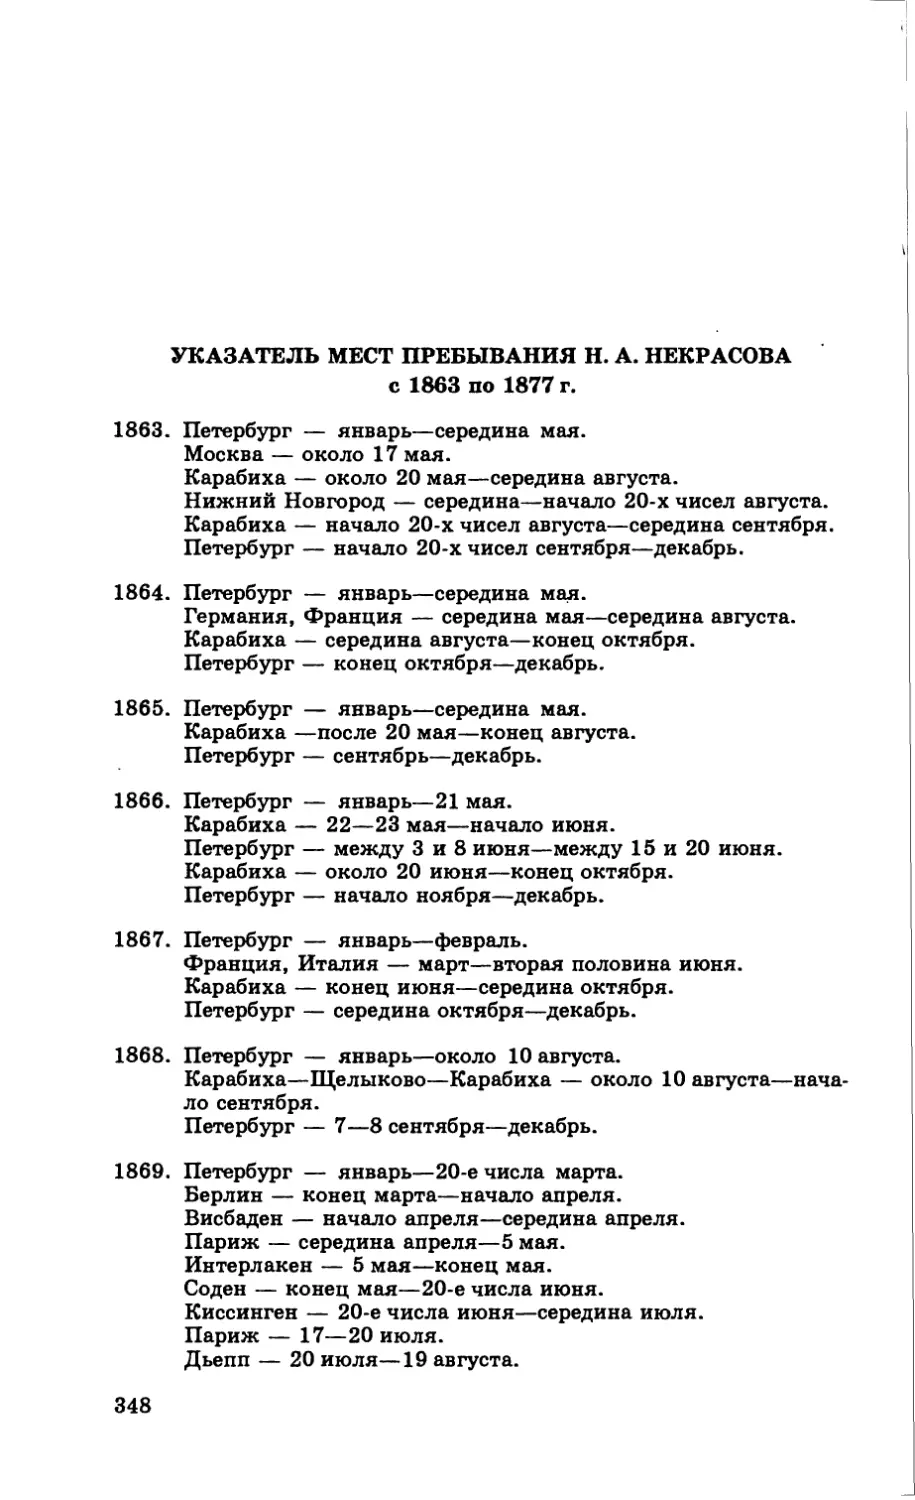 Указатель мест пребывания Н. А. Некрасова с 1863 по 1877 г